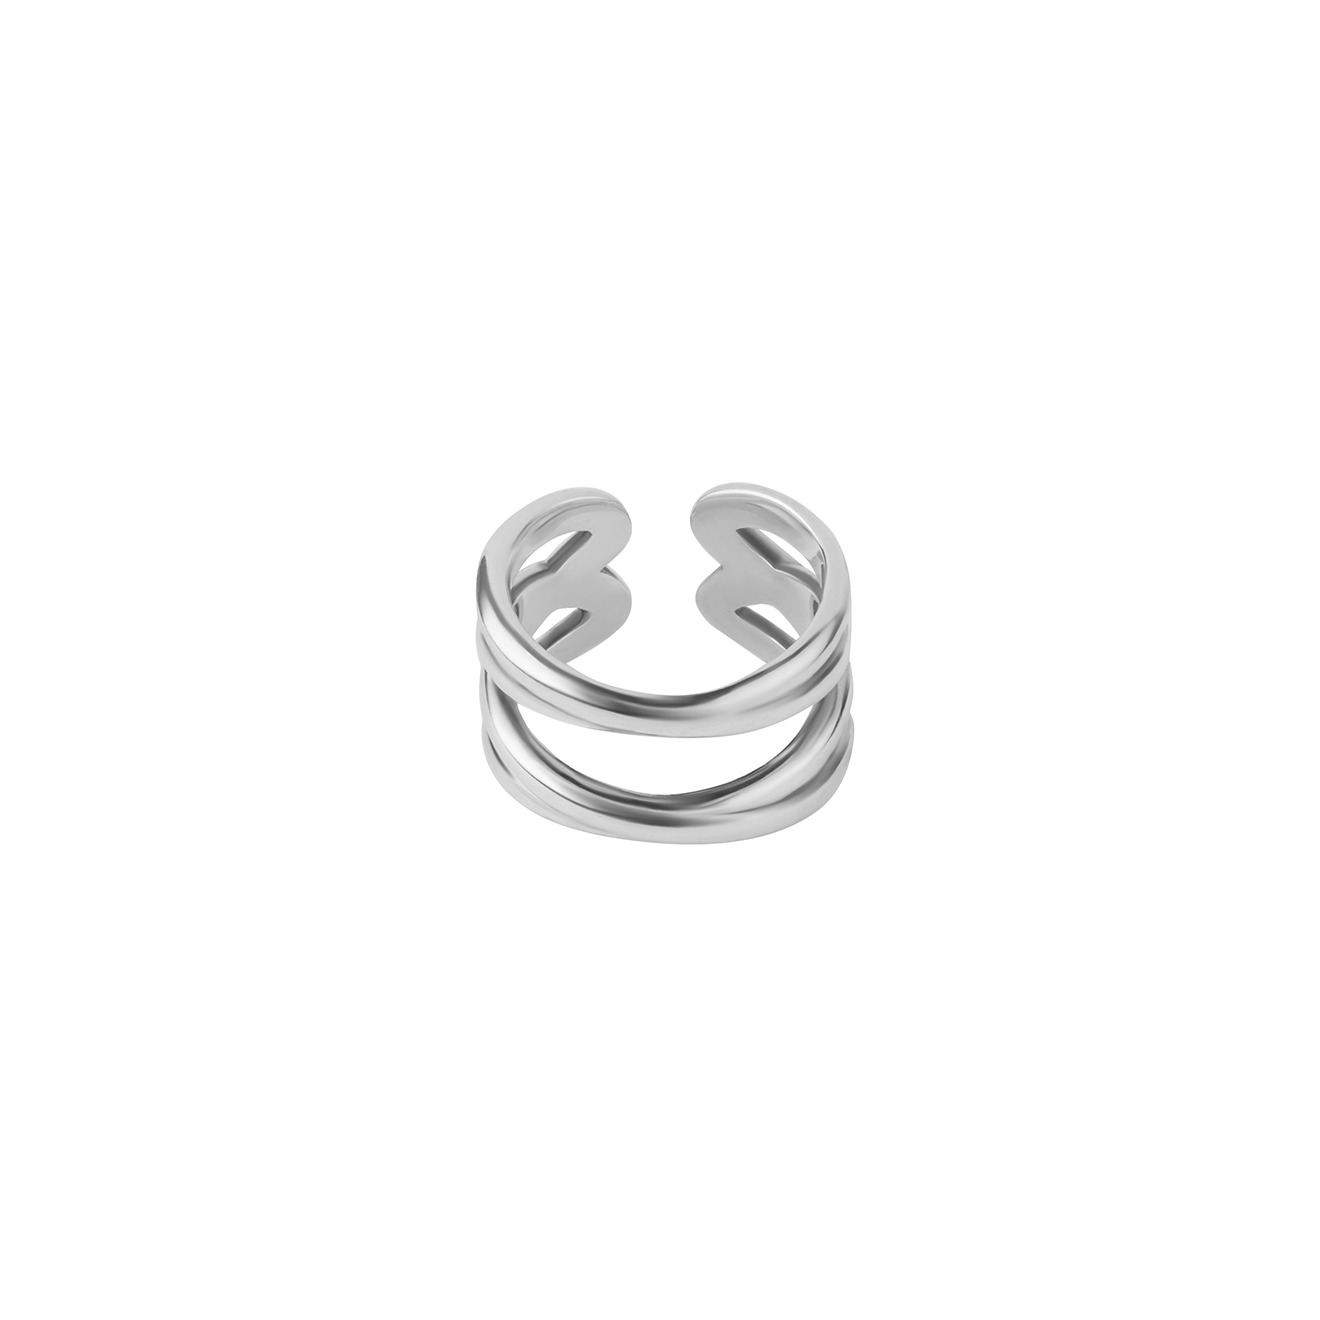 Philippe Audibert Незамкнутое двойное кольцо, покрытое серебром